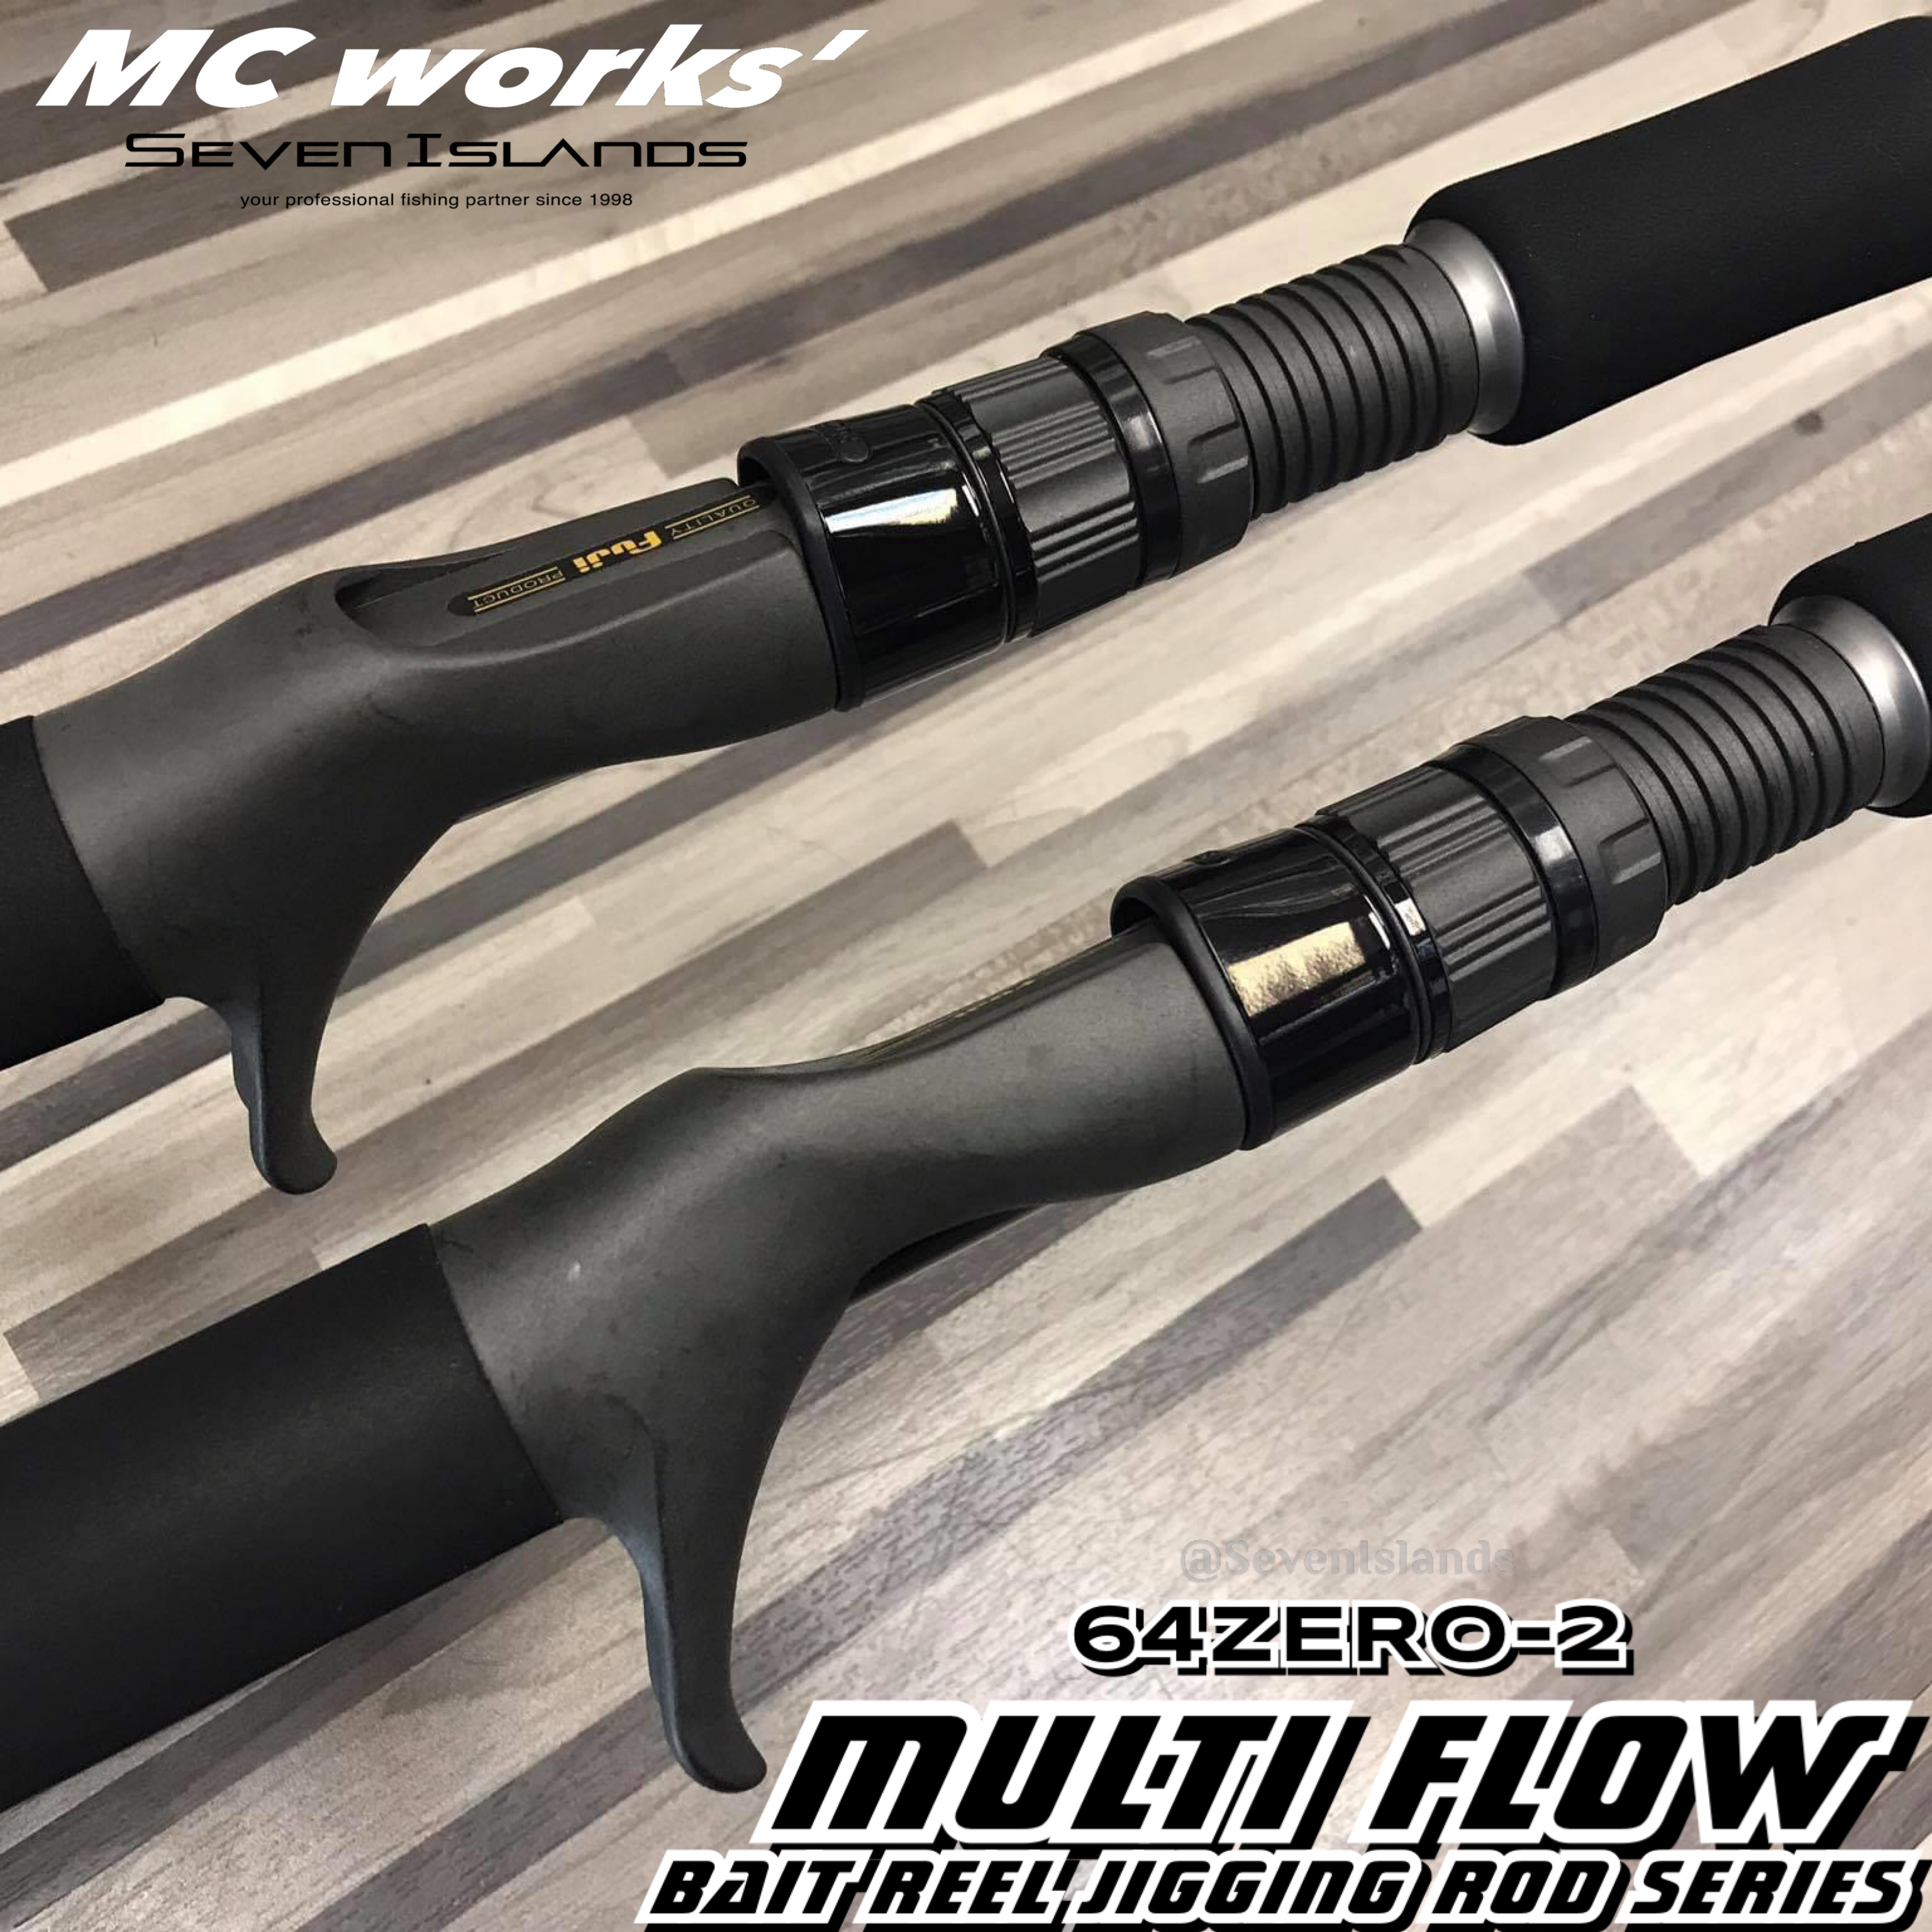 MC WORKS' MULTI FLOW 64ZERO-2 BAIT REEL JIGGING ROD